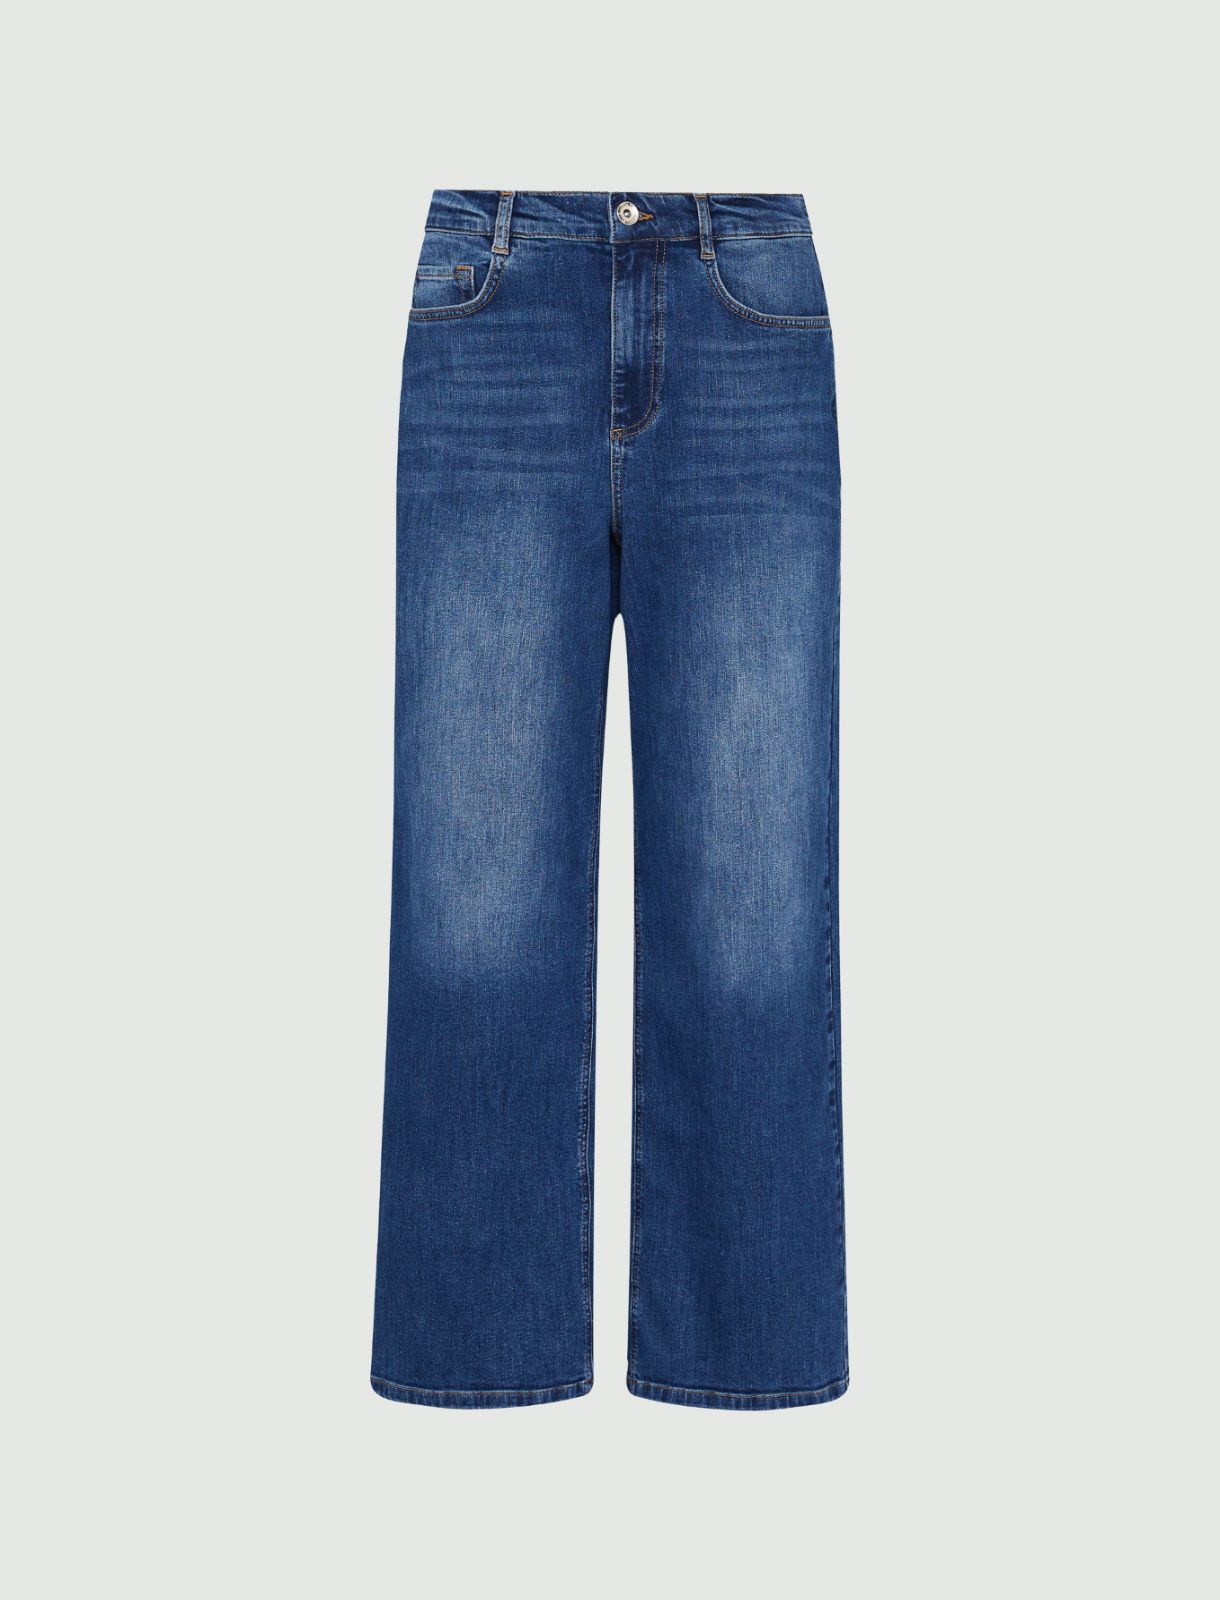 Jean jambe large - Bleu jeans - Marella - 4